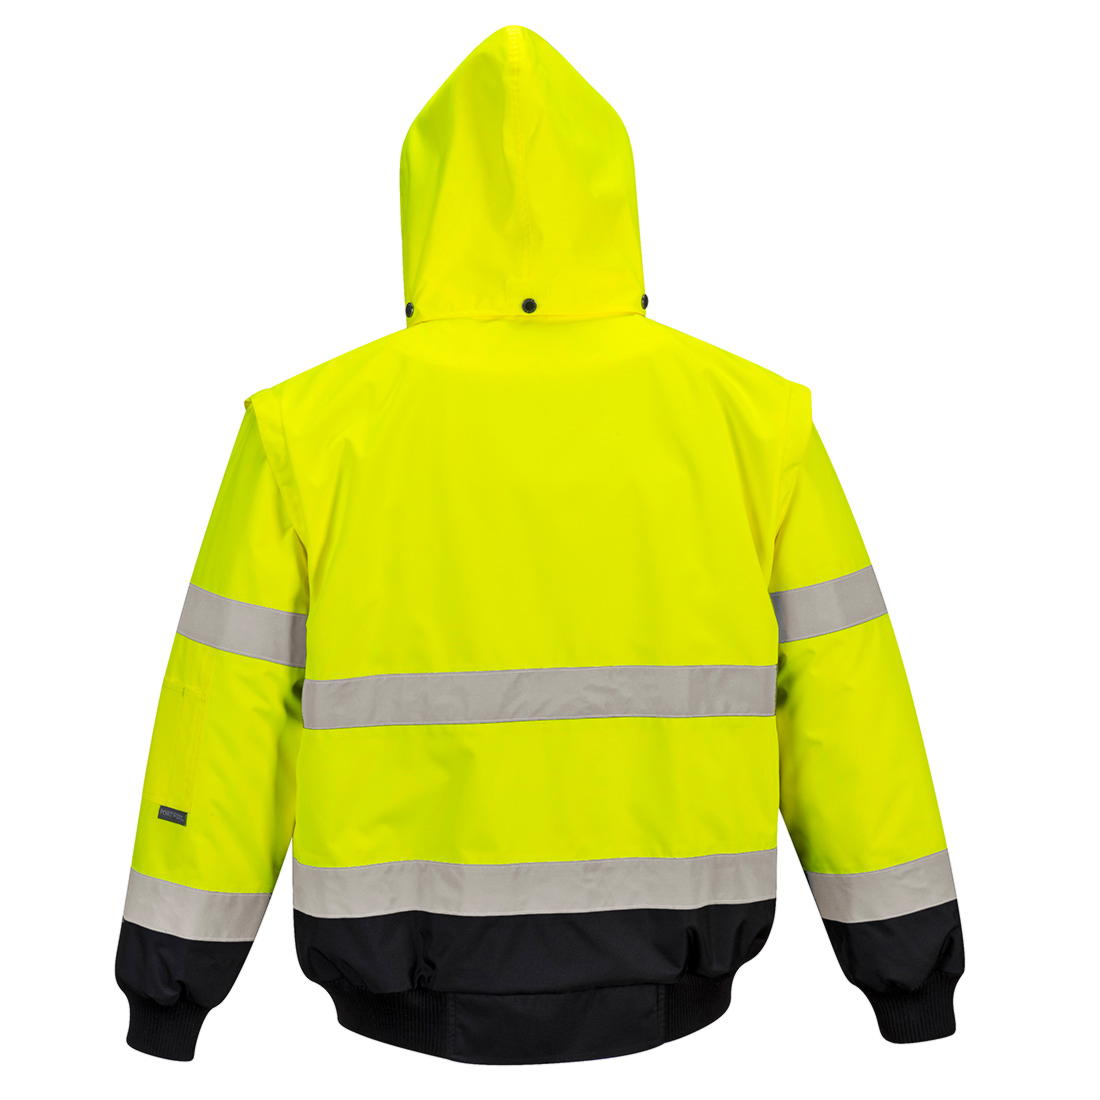 Куртка утепленная C465, цвет желтый/черный